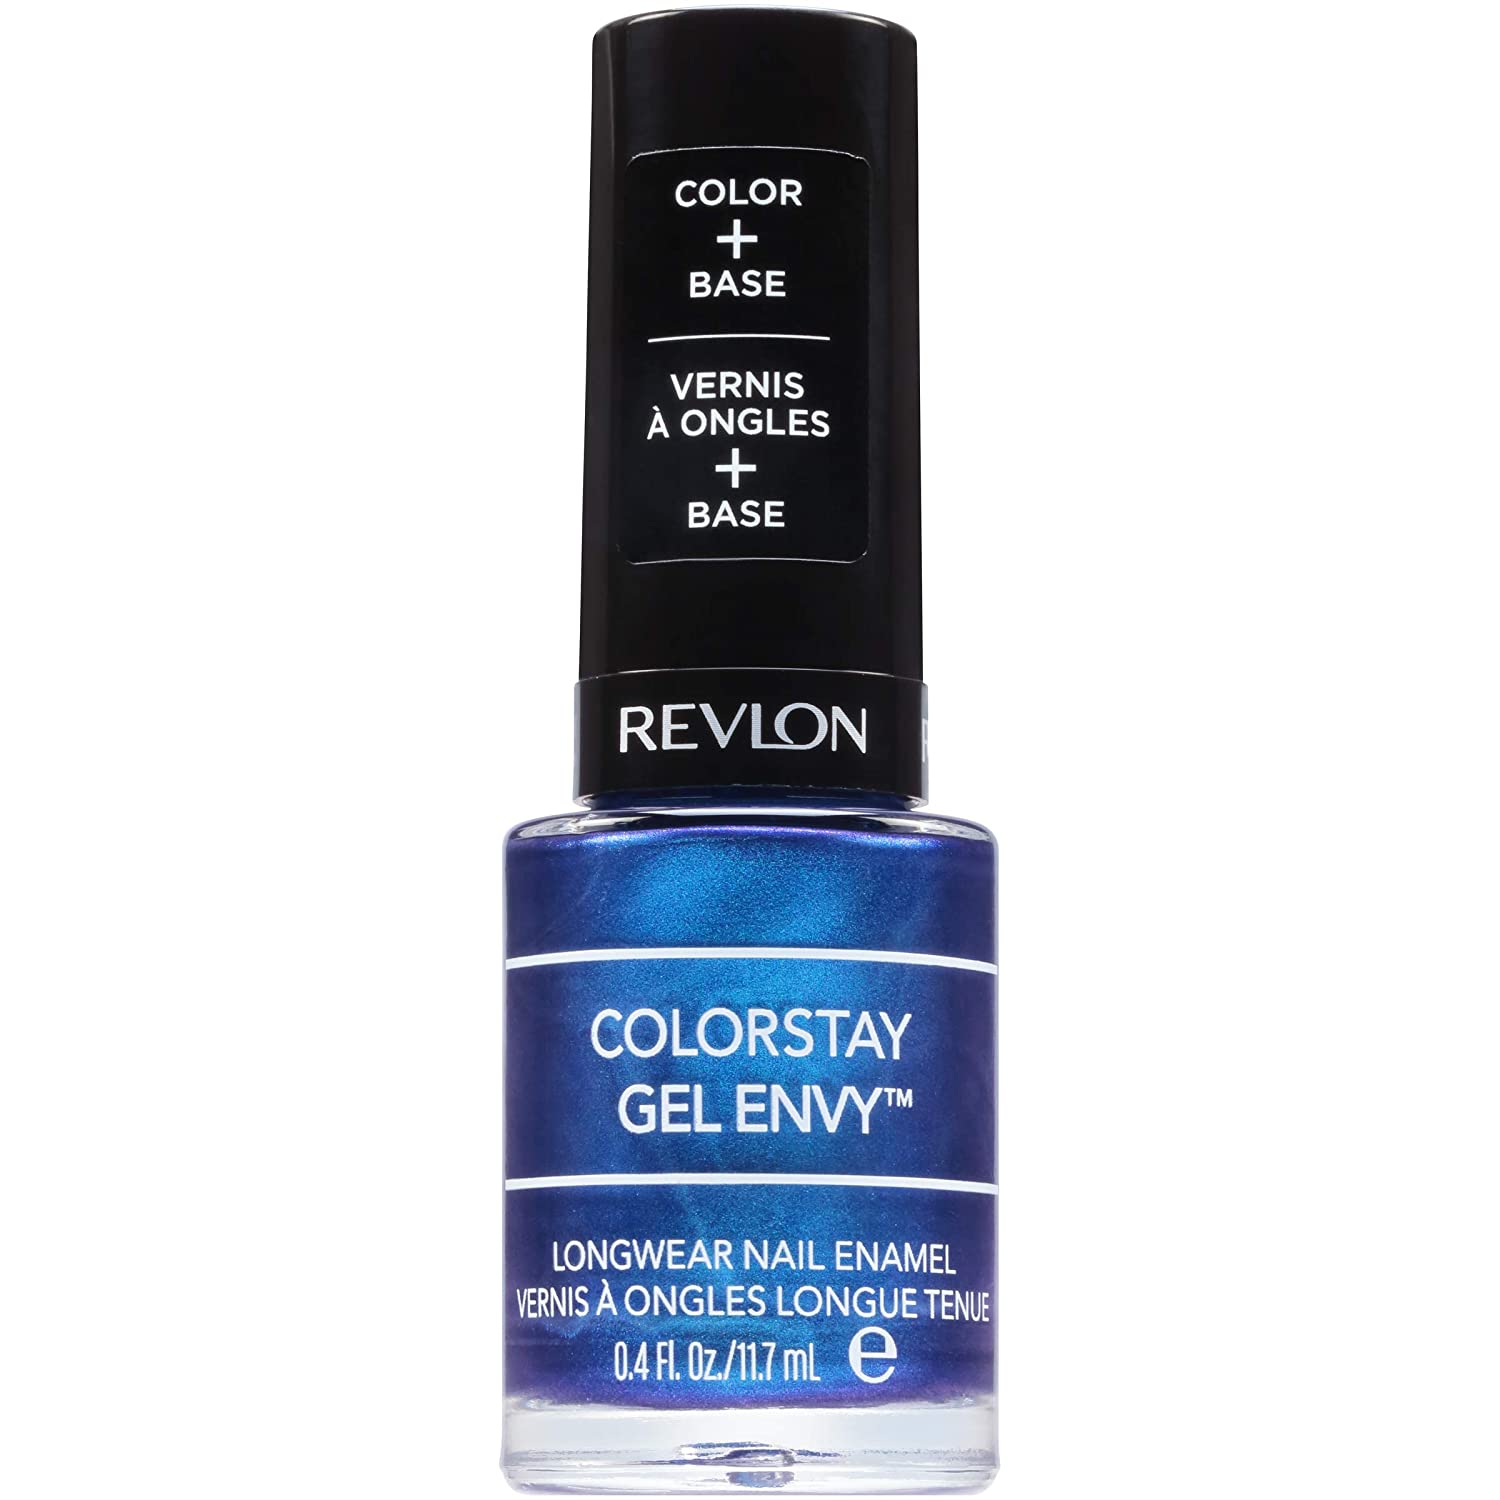 Revlon ColorStay Gel Envy Longwear Nail Polish, in Blue/Green, 445 Try Your Luck $1.93